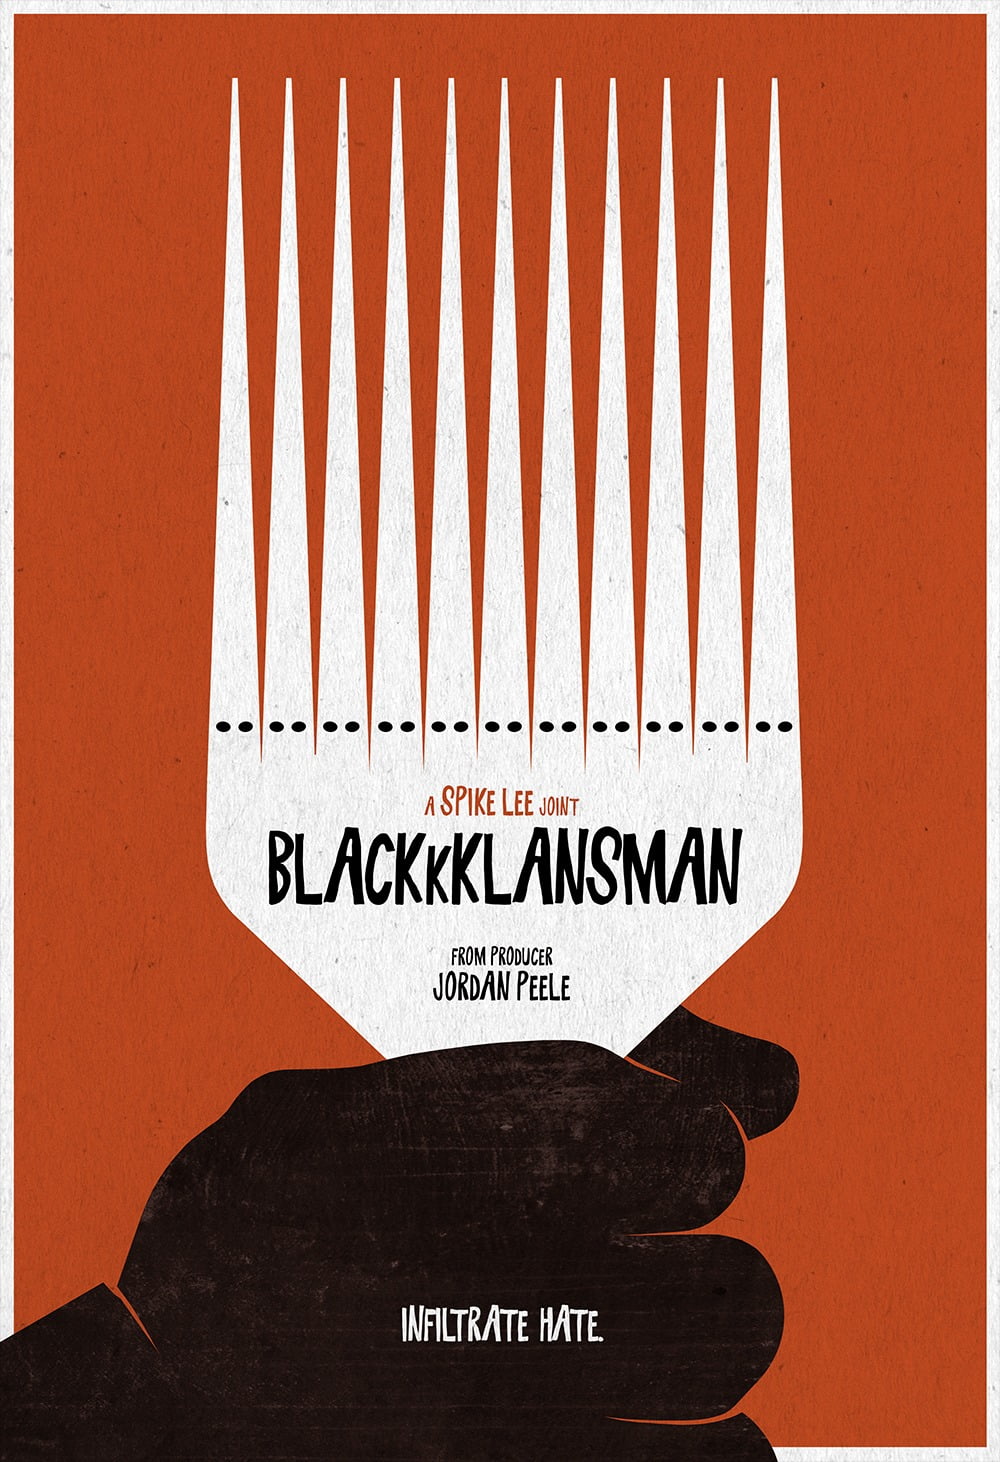 BlackkklansmanArt1